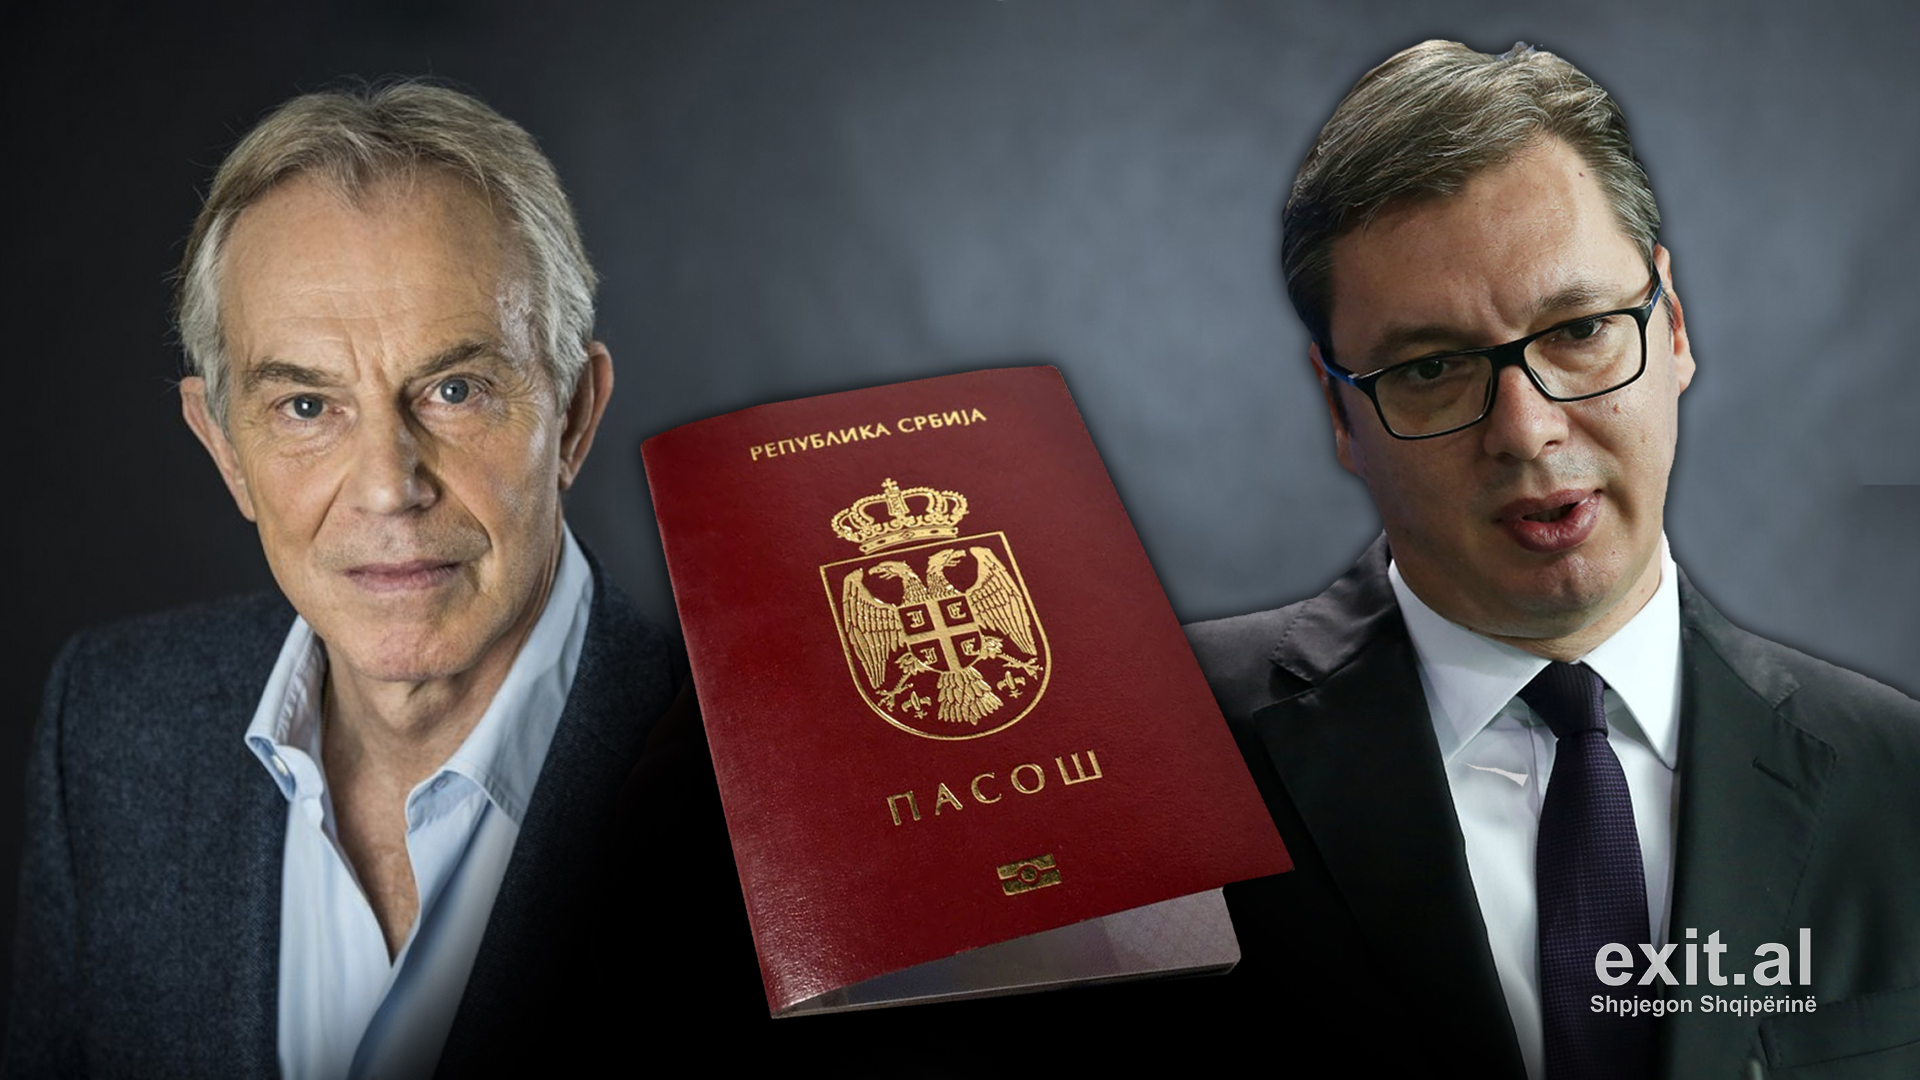 Bler dhe Vuçiç akuzohen se mbrojtën zyrtarë të huaj të korruptuar përmes nënshtetësisë serbe